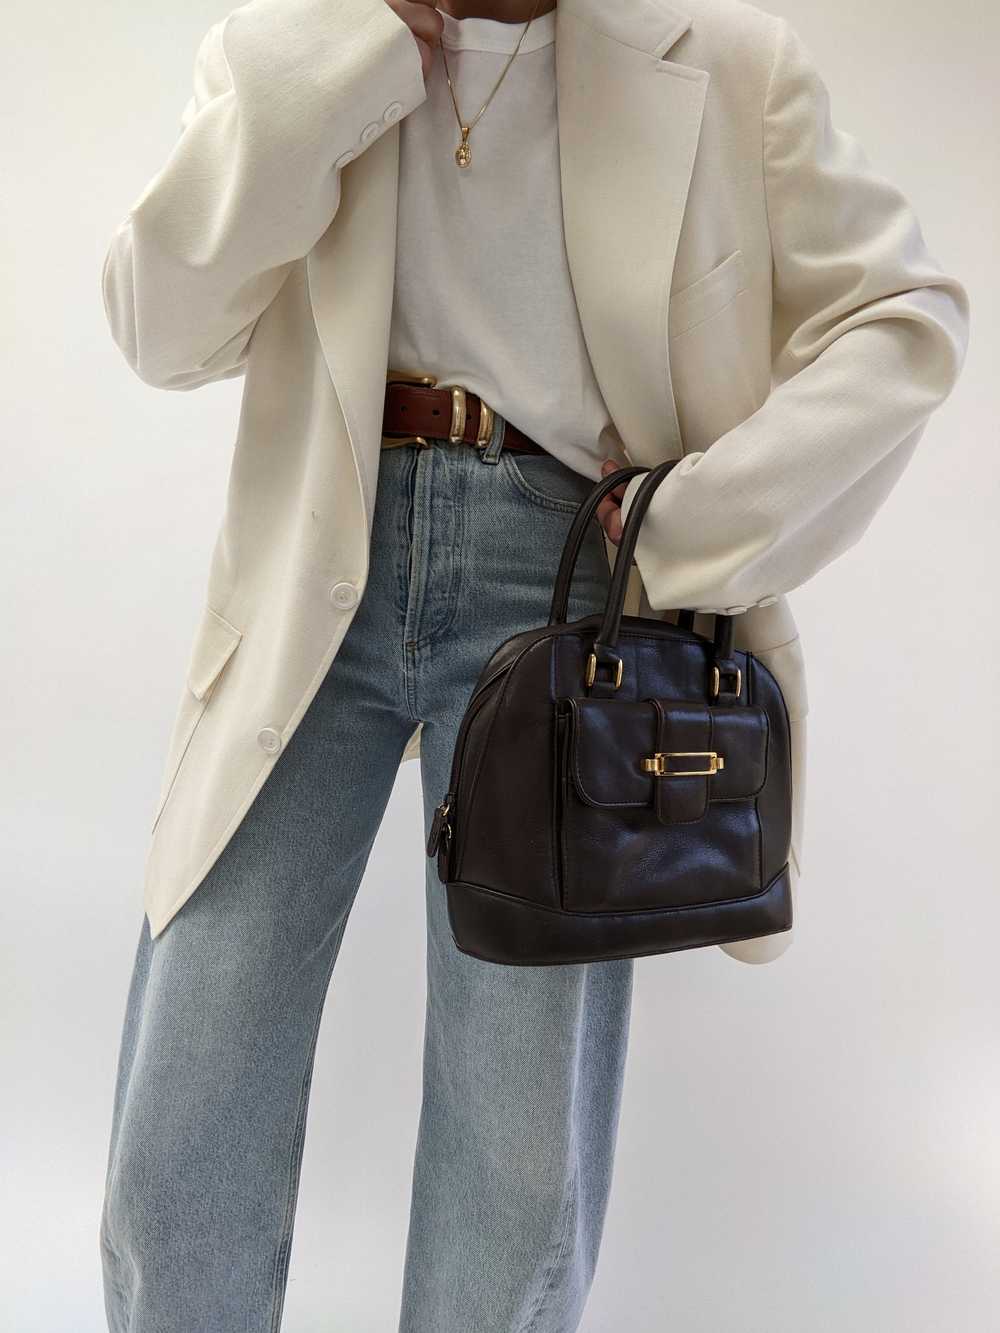 Vintage Chestnut Leather Handbag - image 3